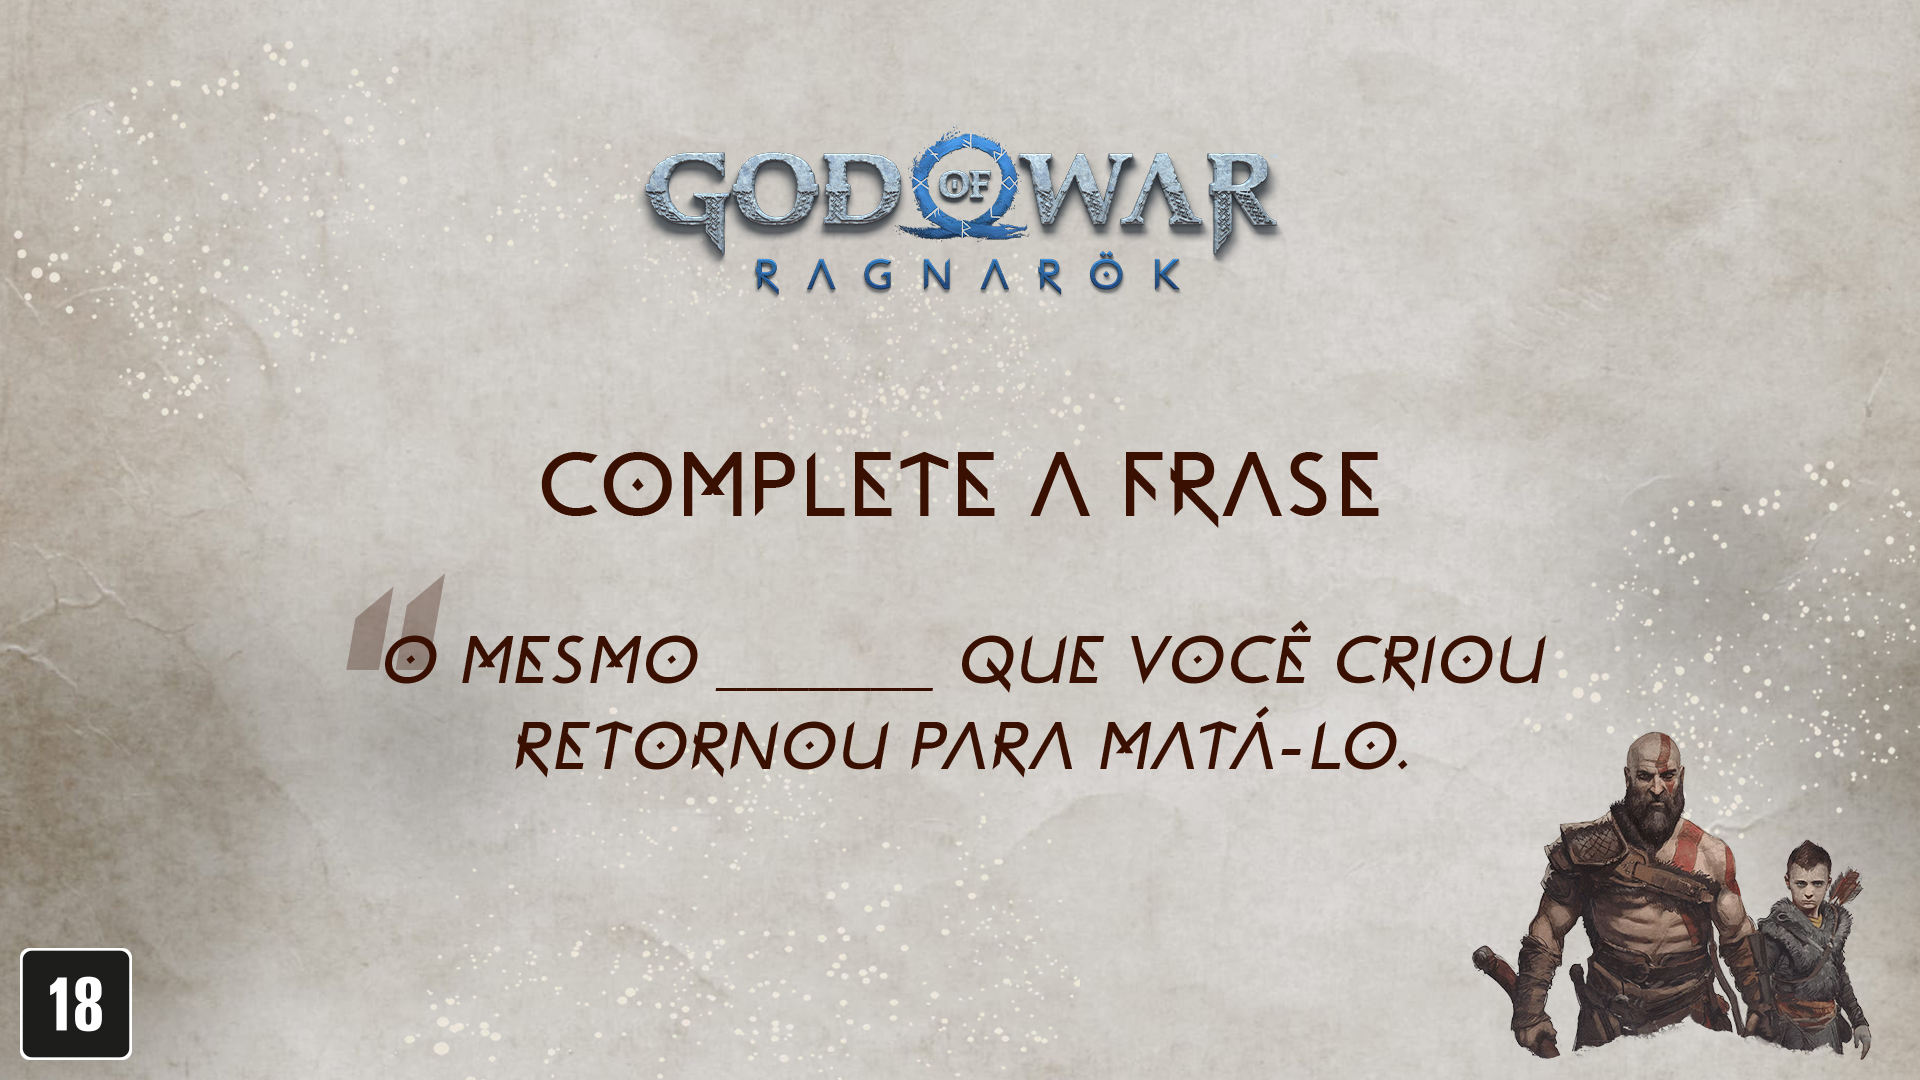 Melhor Final: Platinando God of War 3